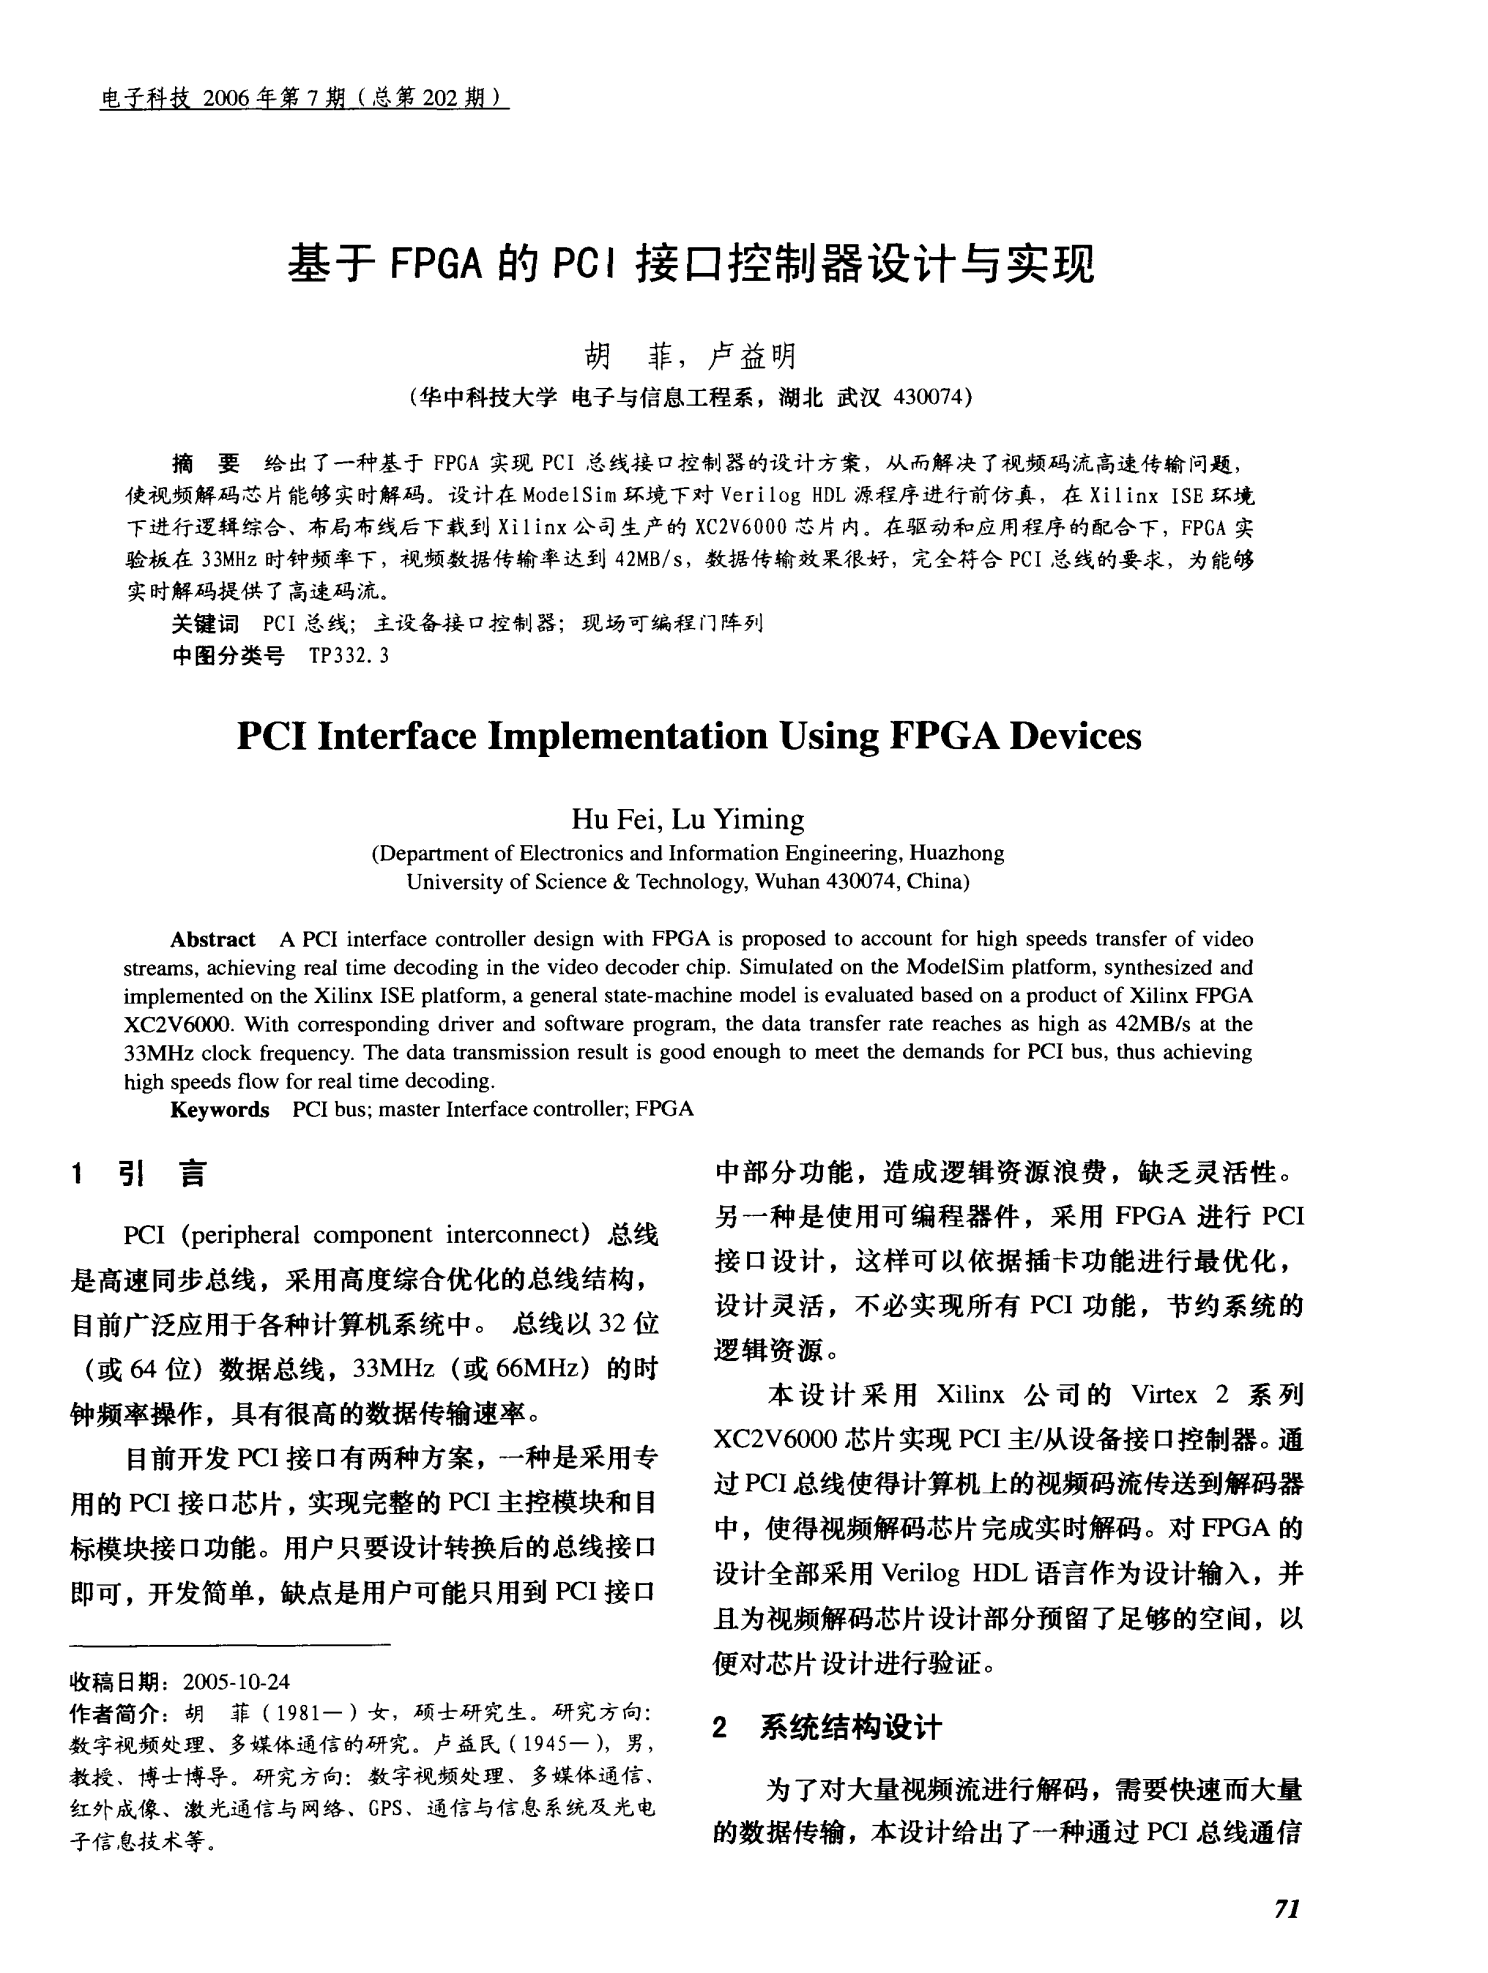 基于FPGA的PCI接口控制器设计与实现